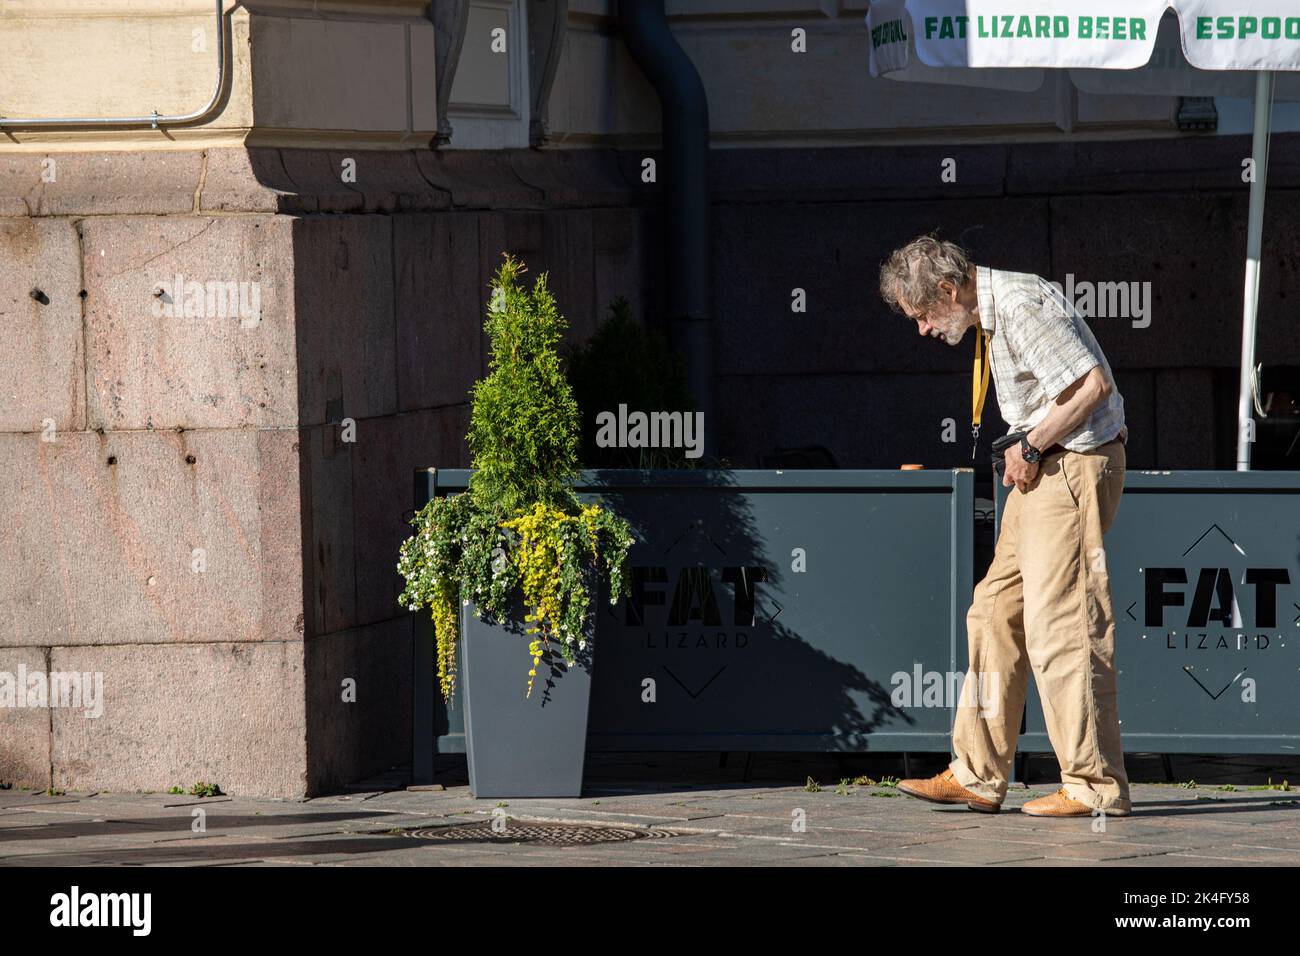 Elderly man walking on sidewalk in Kluuvi district of Helsinki, Finland Stock Photo